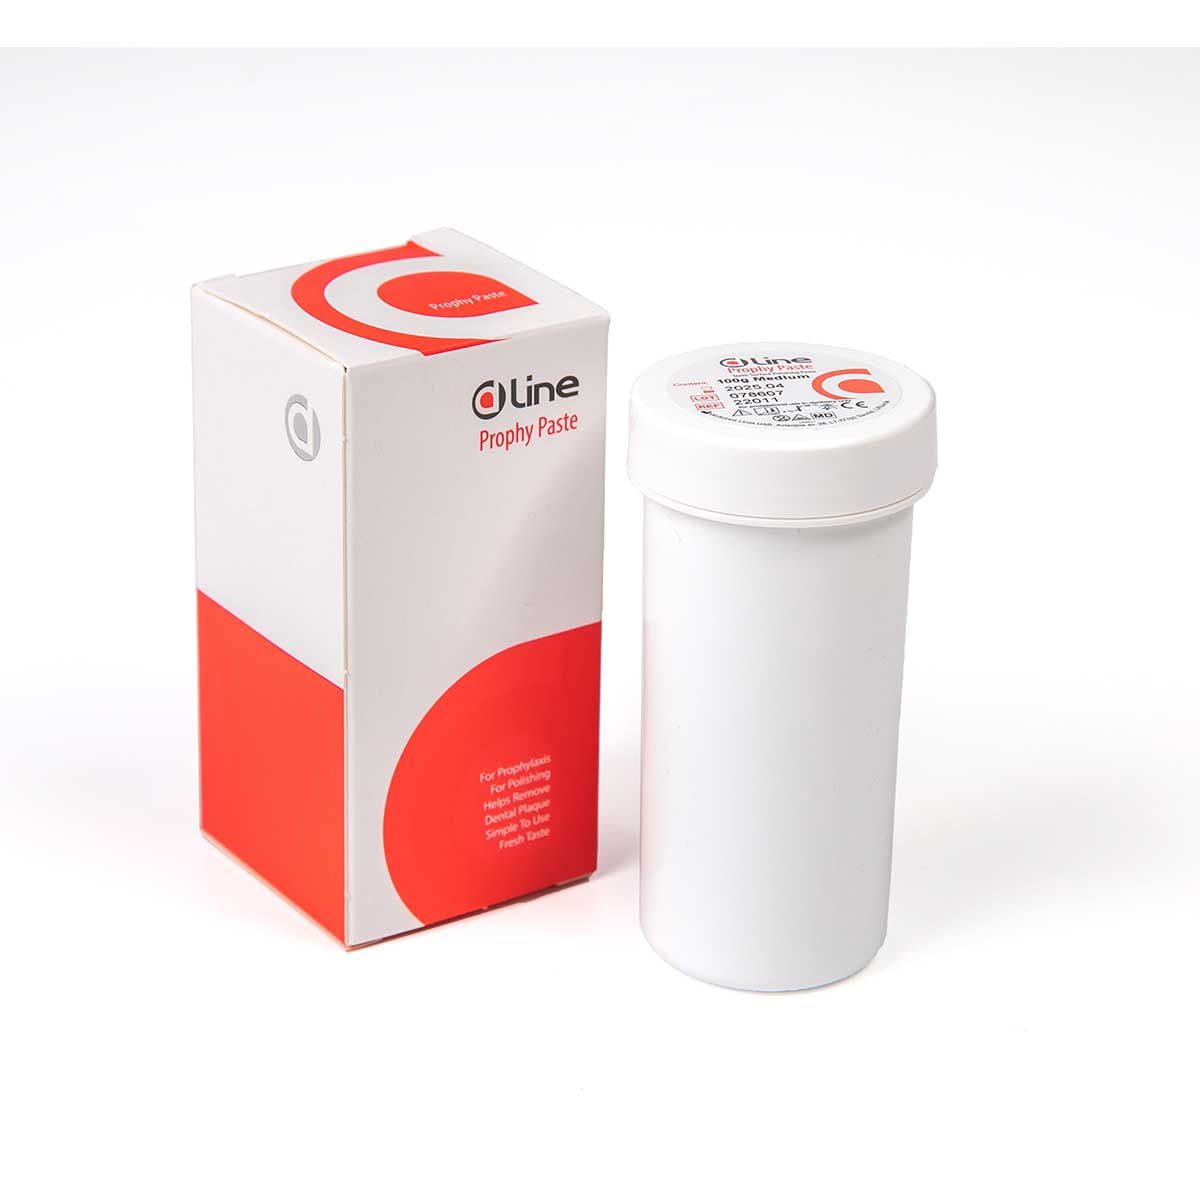 DLine Polierpaste 100g Medium Packung mit Inhalt